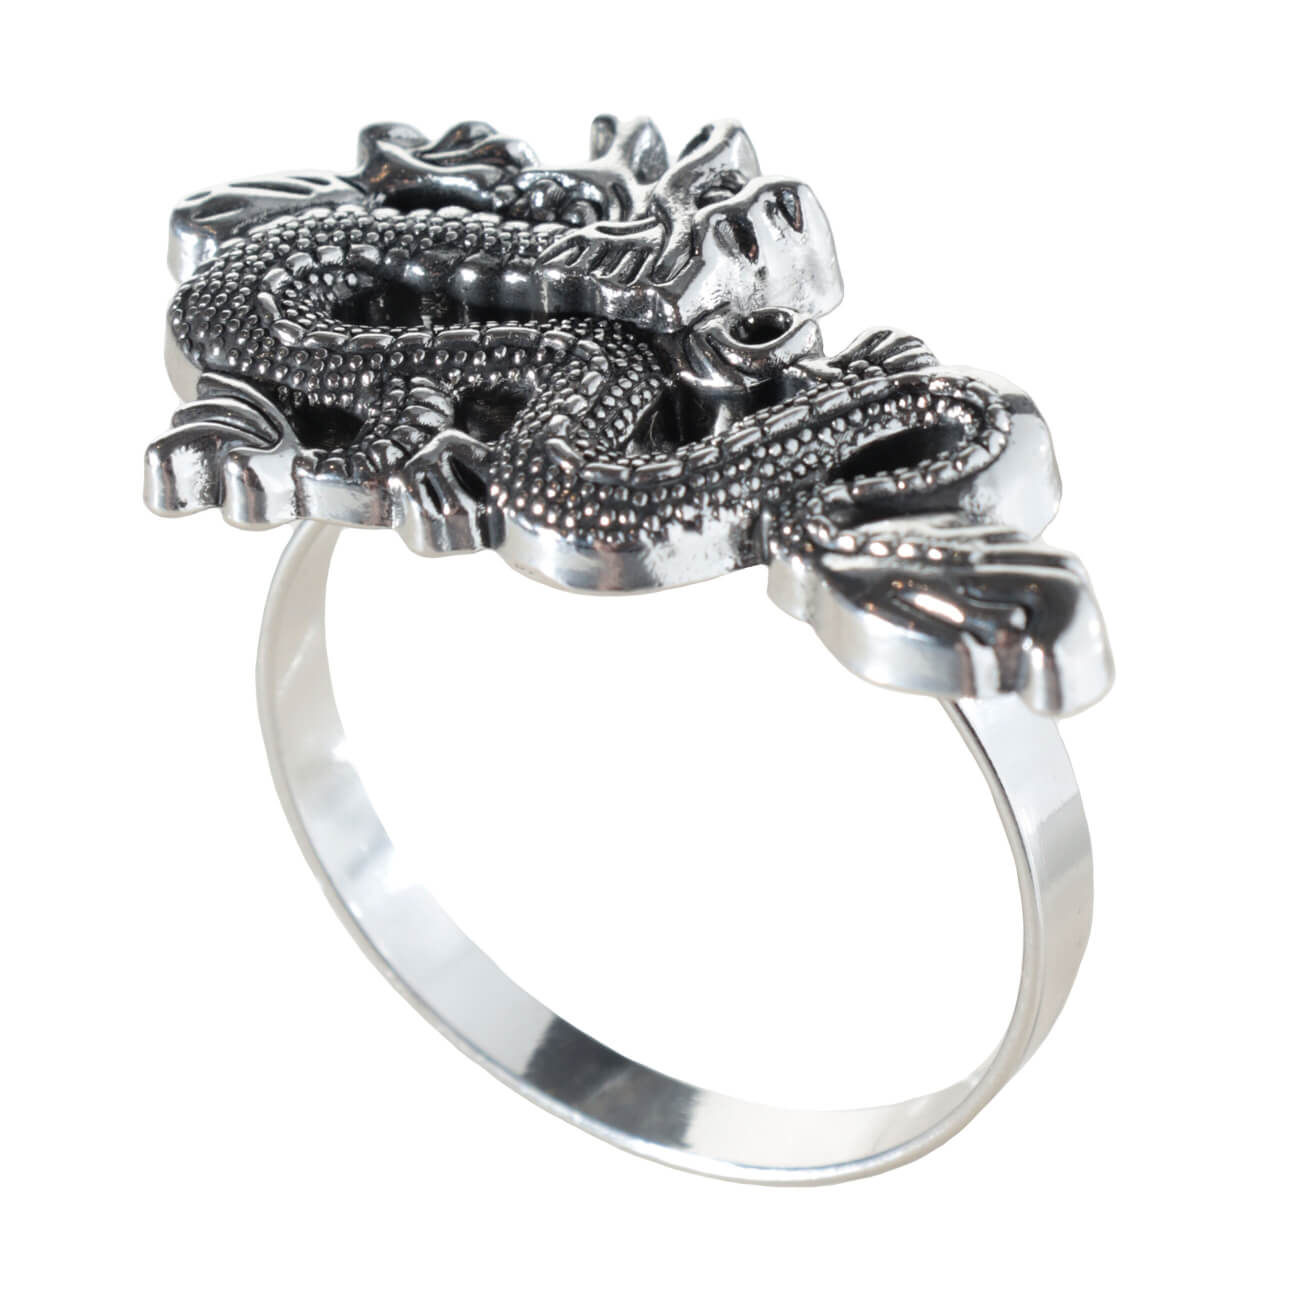 Кольцо для салфеток, 5 см, металл, серебристое, Дракон, Dragon dayron штопор винт 14 см полирезин металл дракон dragon dayron